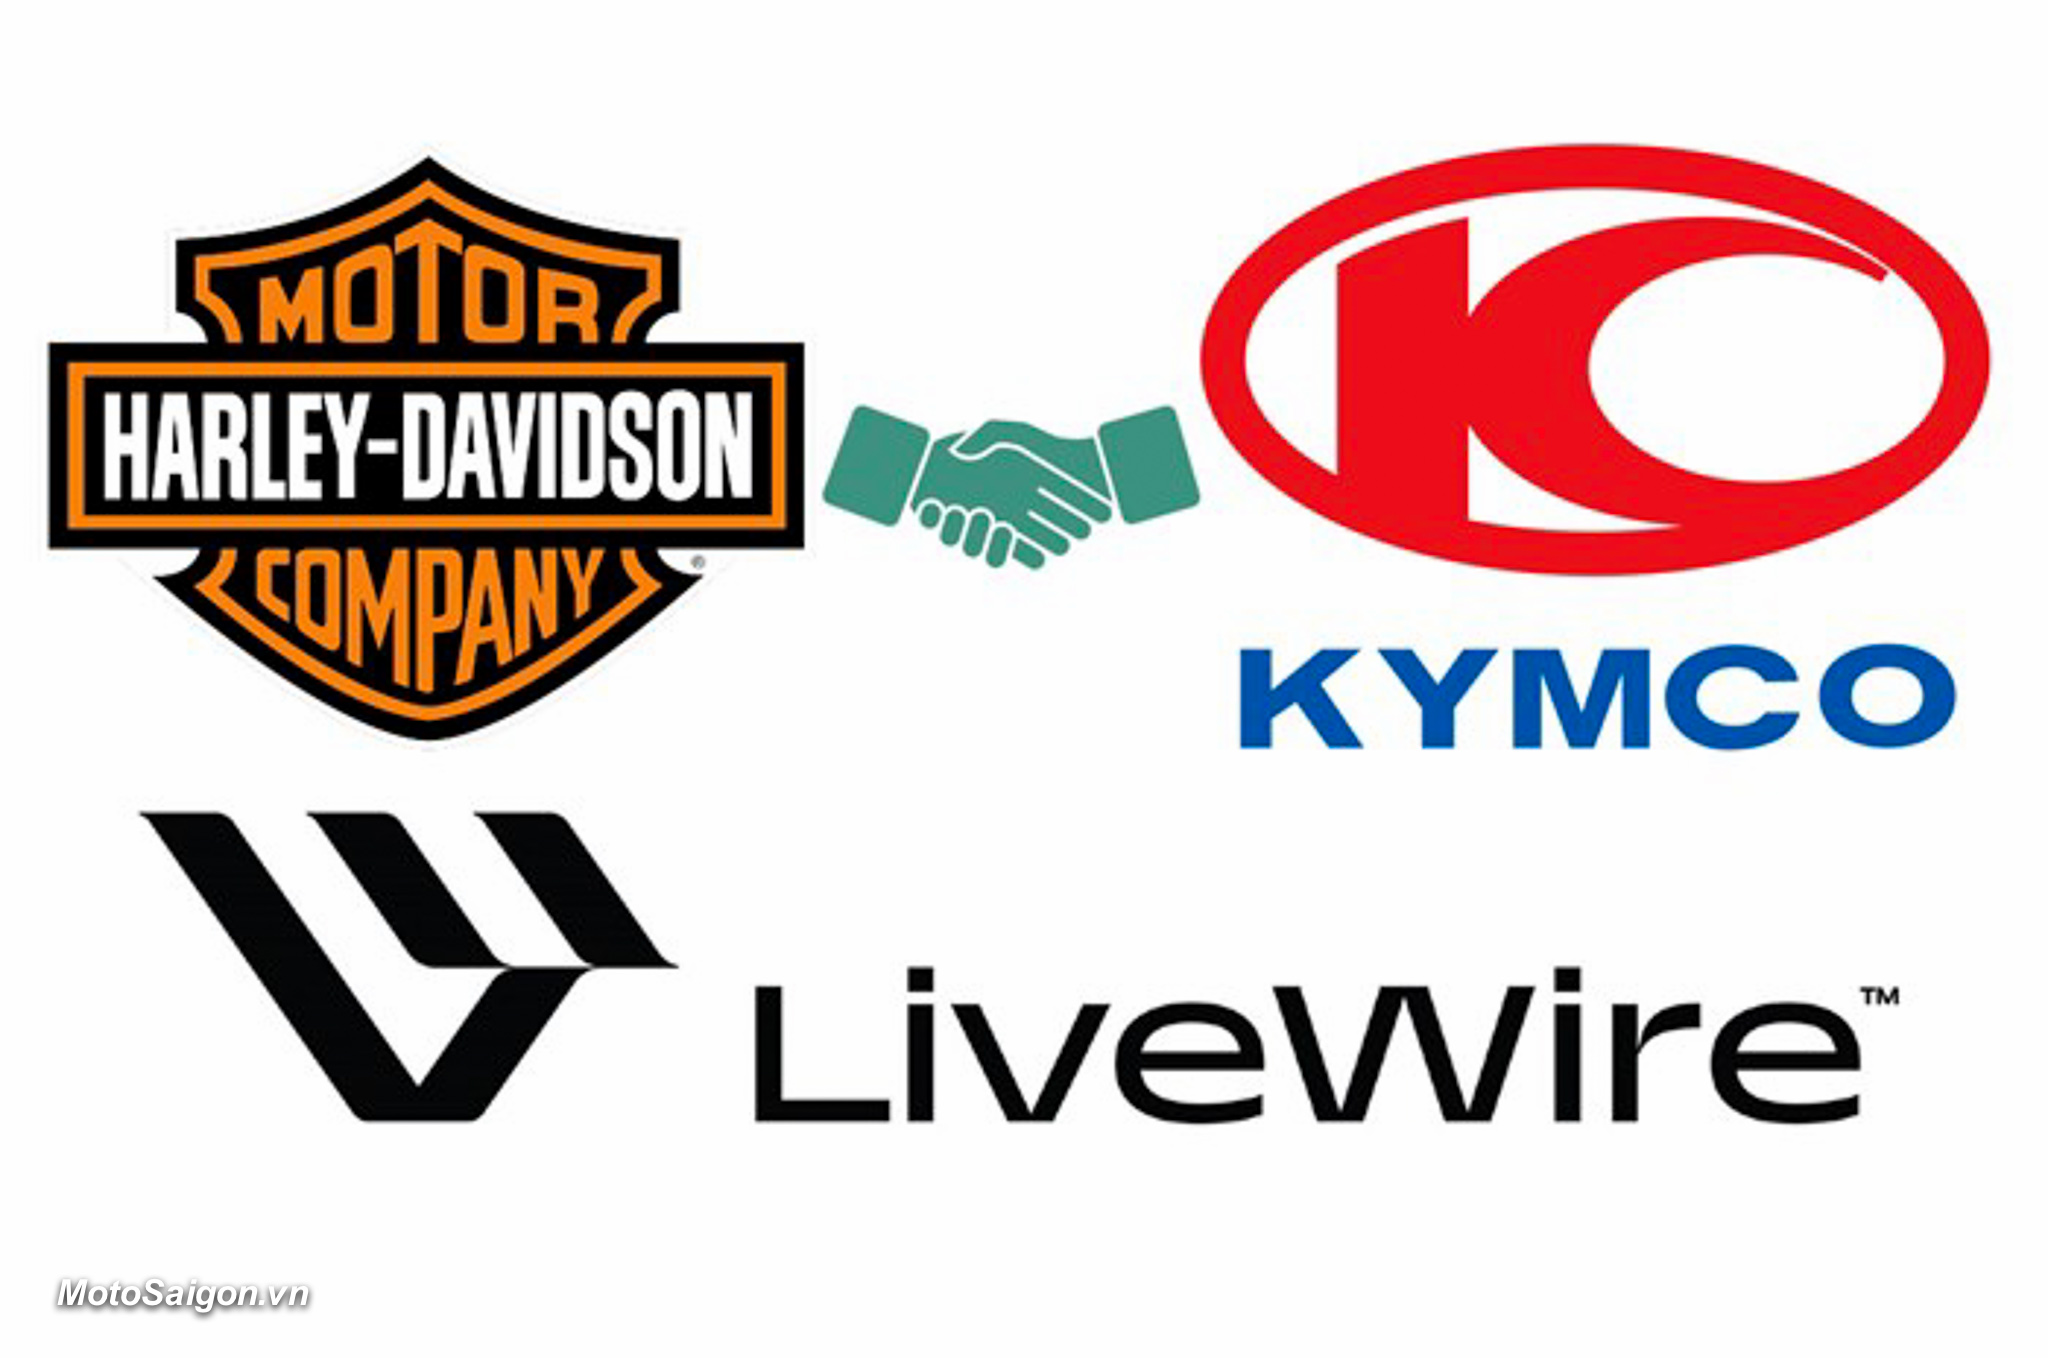 Harley-Davidson hợp tác với KYMCO phát triển dòng xe mô tô điện LiveWire